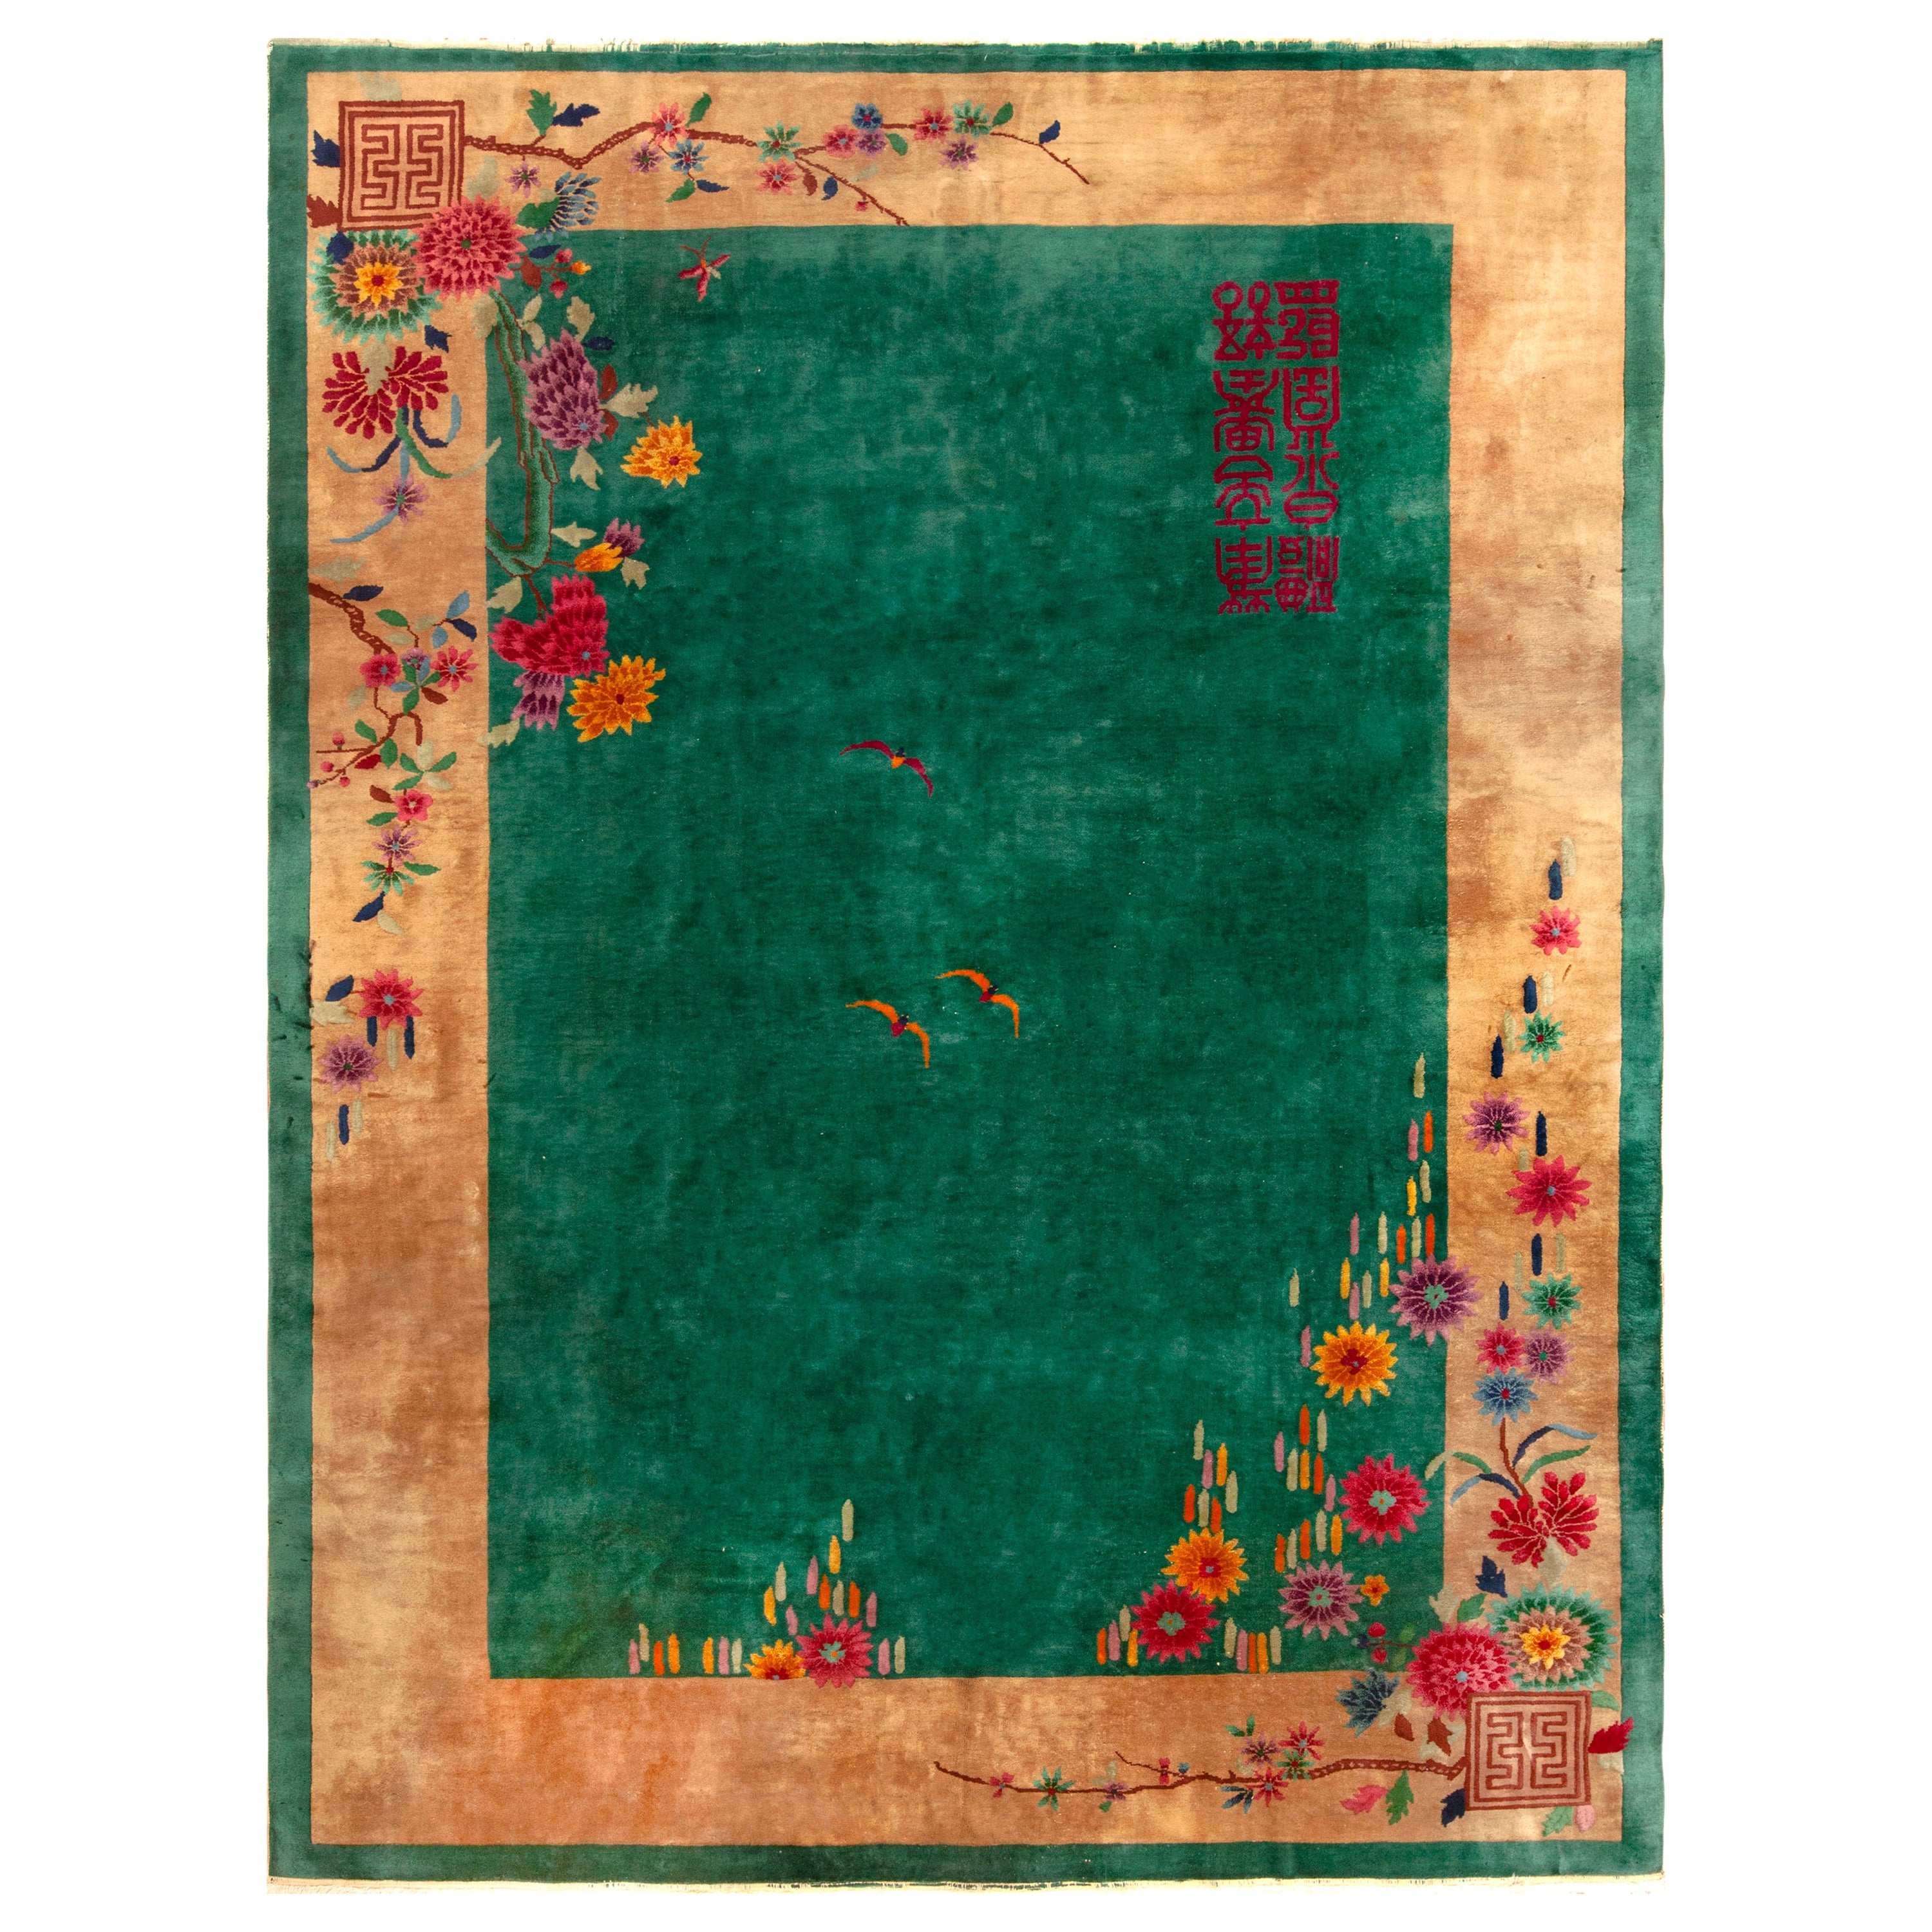 Wunderschöner antiker chinesischer Art-Déco-Teppich in Grün 9' x 11'7"